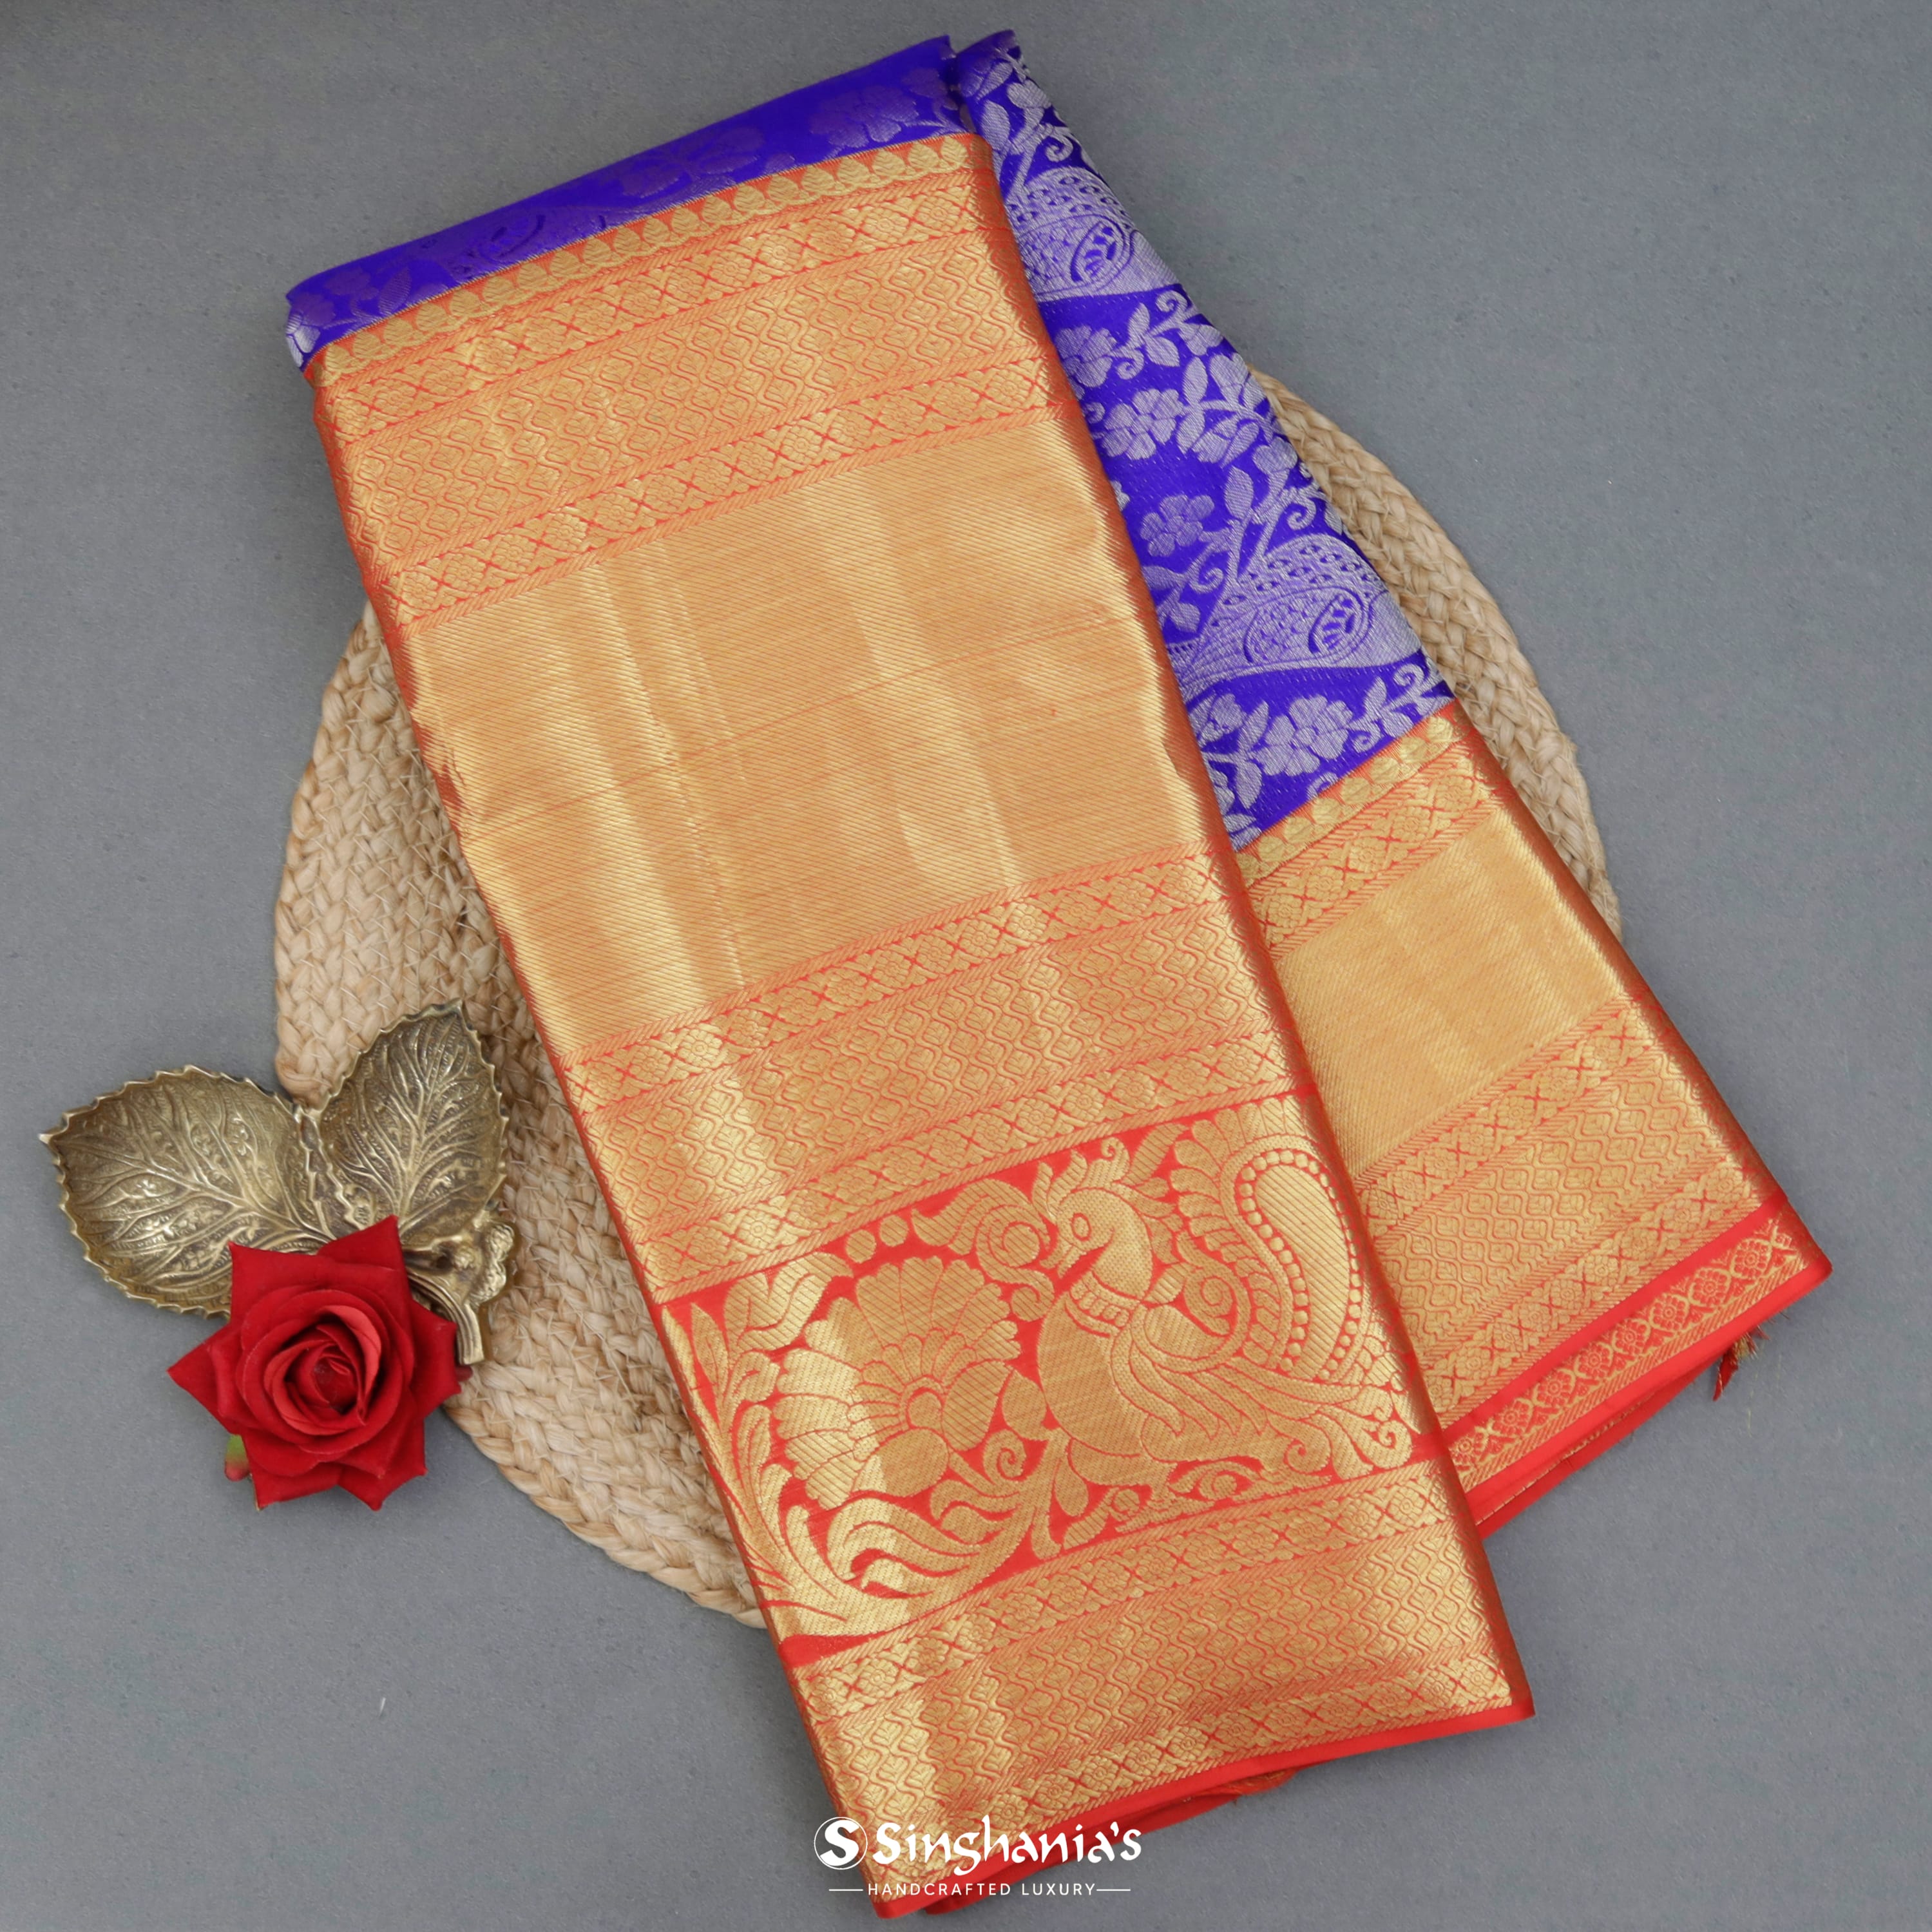 Picotee Blue Silk Kanjivaram Saree With Nature Inspired Motif Pattern